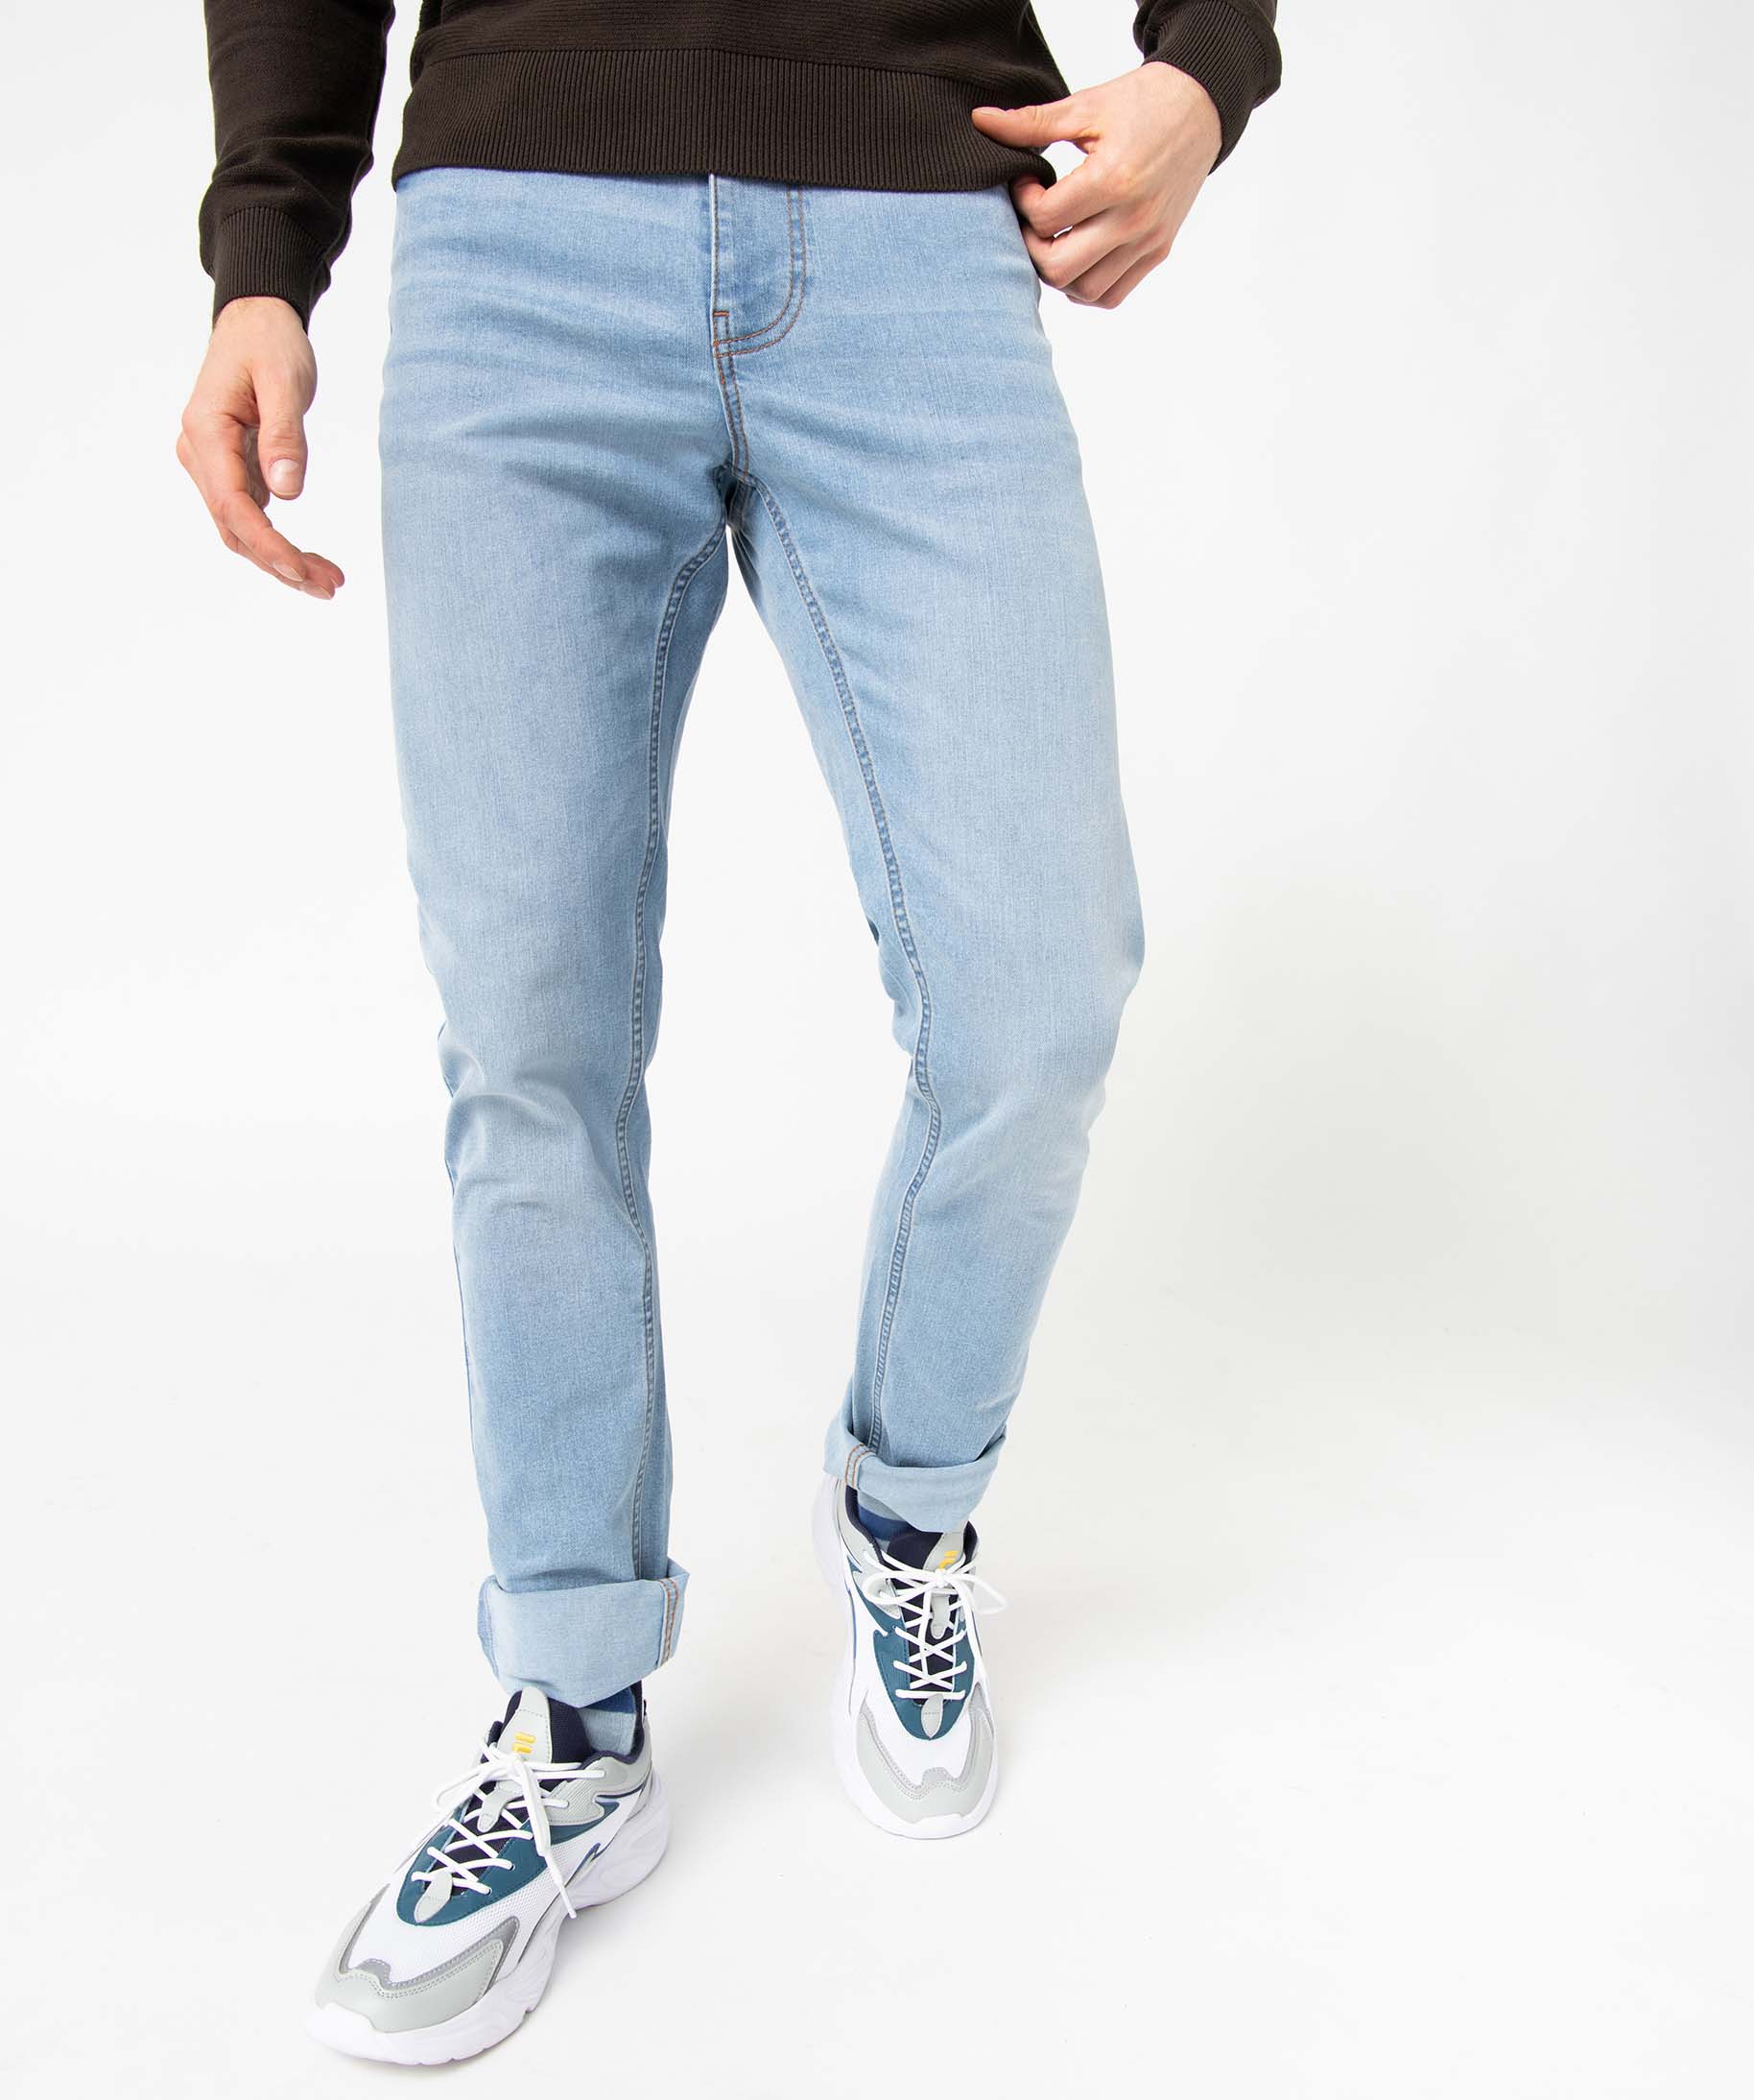 jean ecoresponsable coupe slim homme gris jeans slim